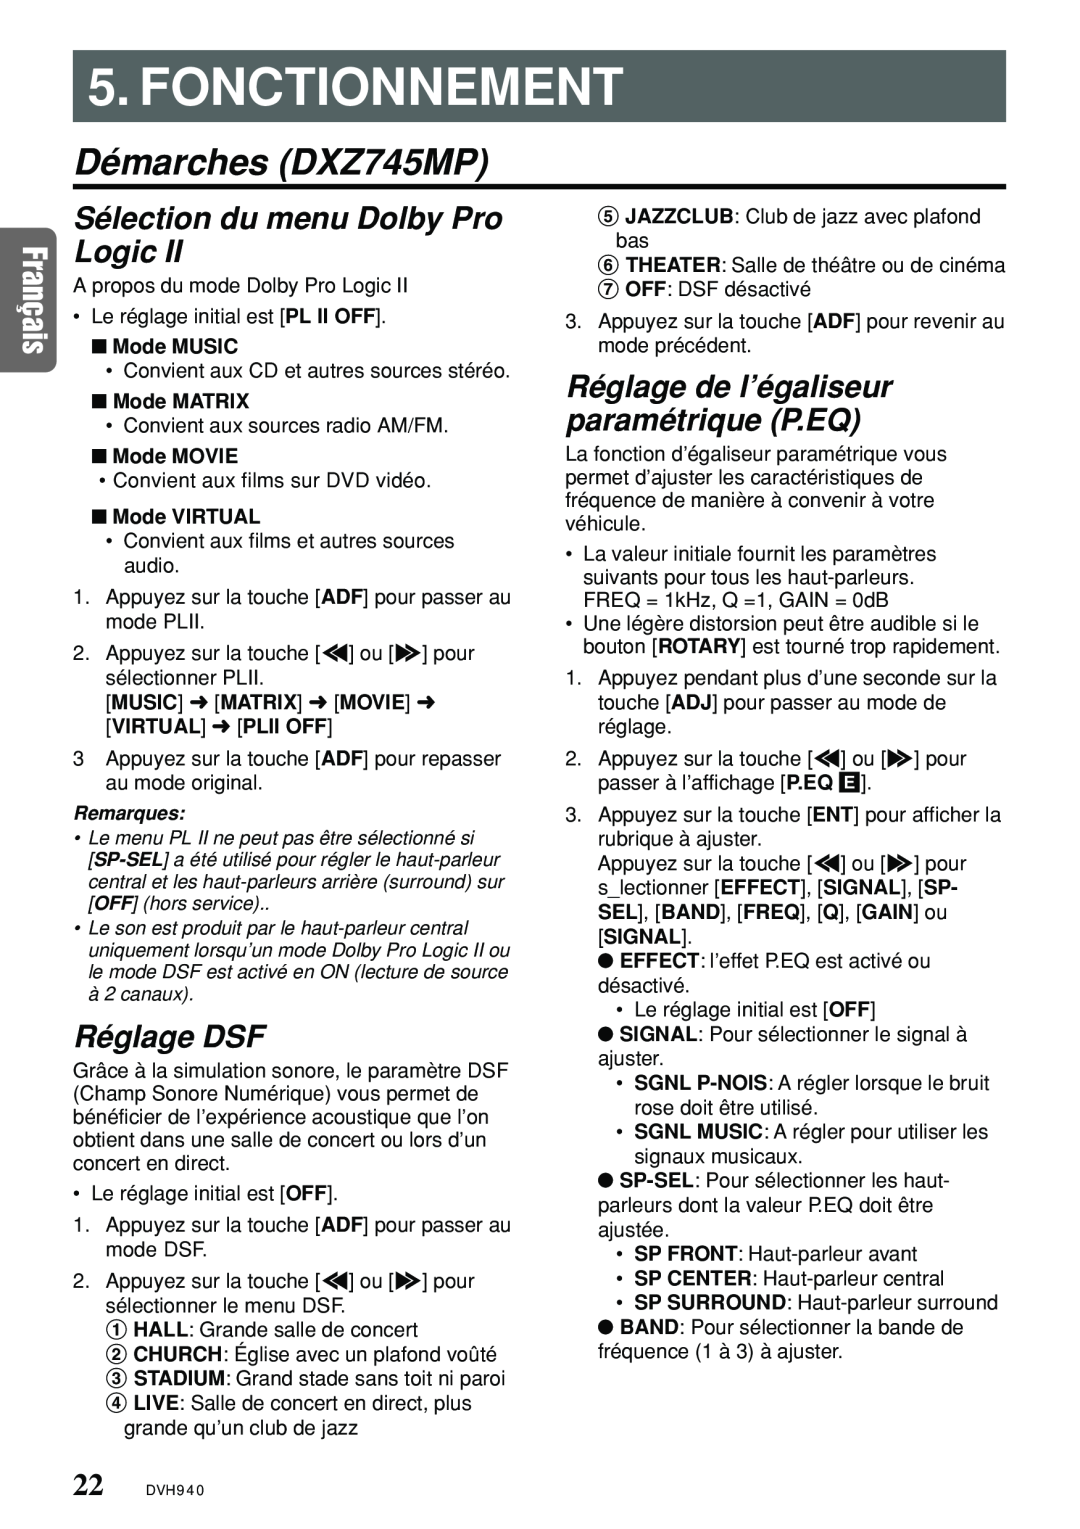 Clarion DVH940N owner manual Fonctionnement, Démarches DXZ745MP 